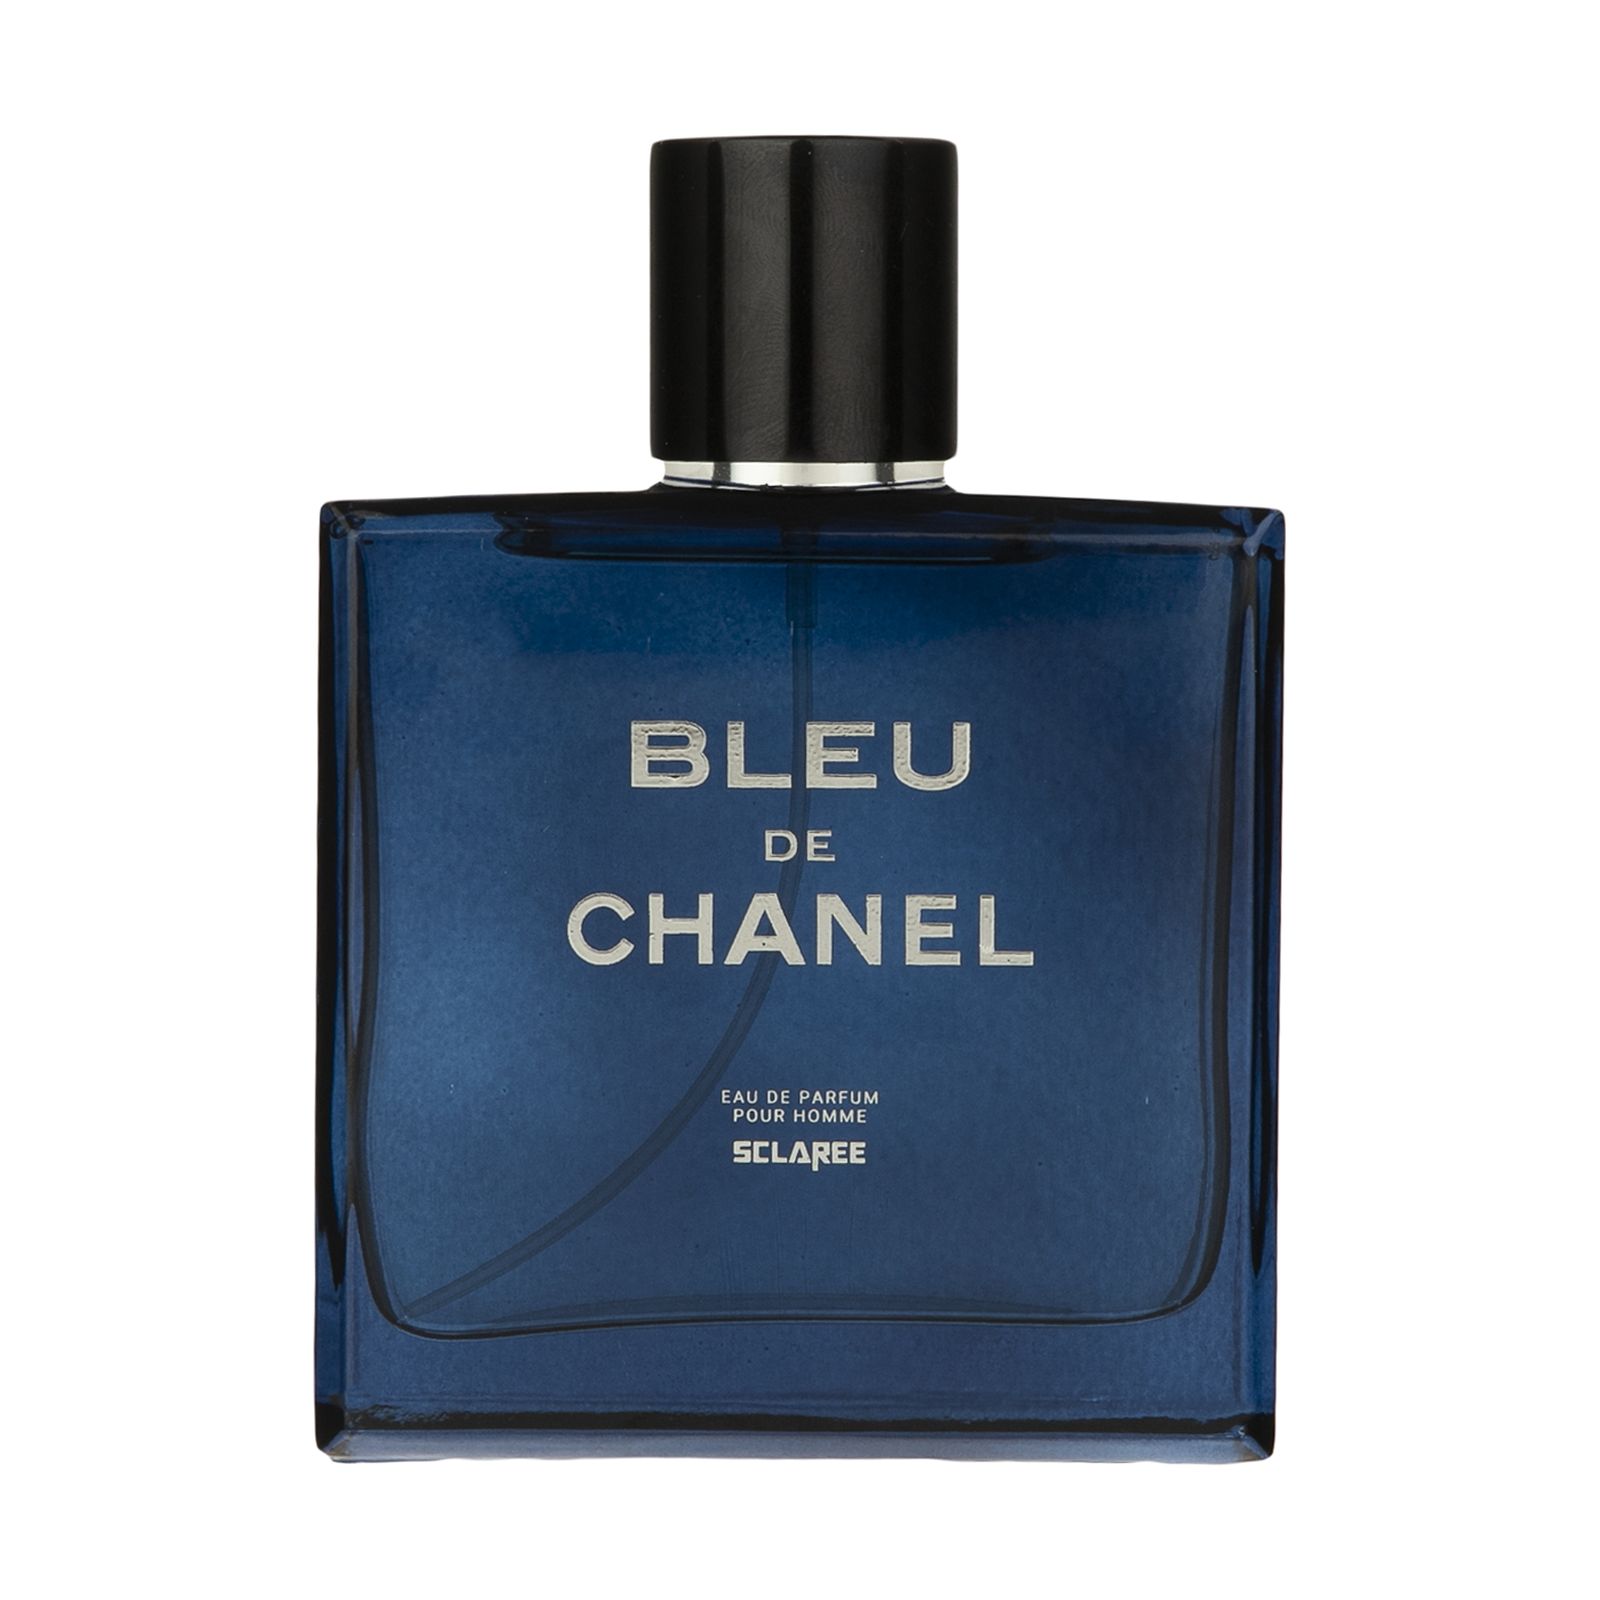 ادو پرفیوم مردانه اسکلاره مدل Bleu De Chanel حجم 100 میلی لیتر -  - 1